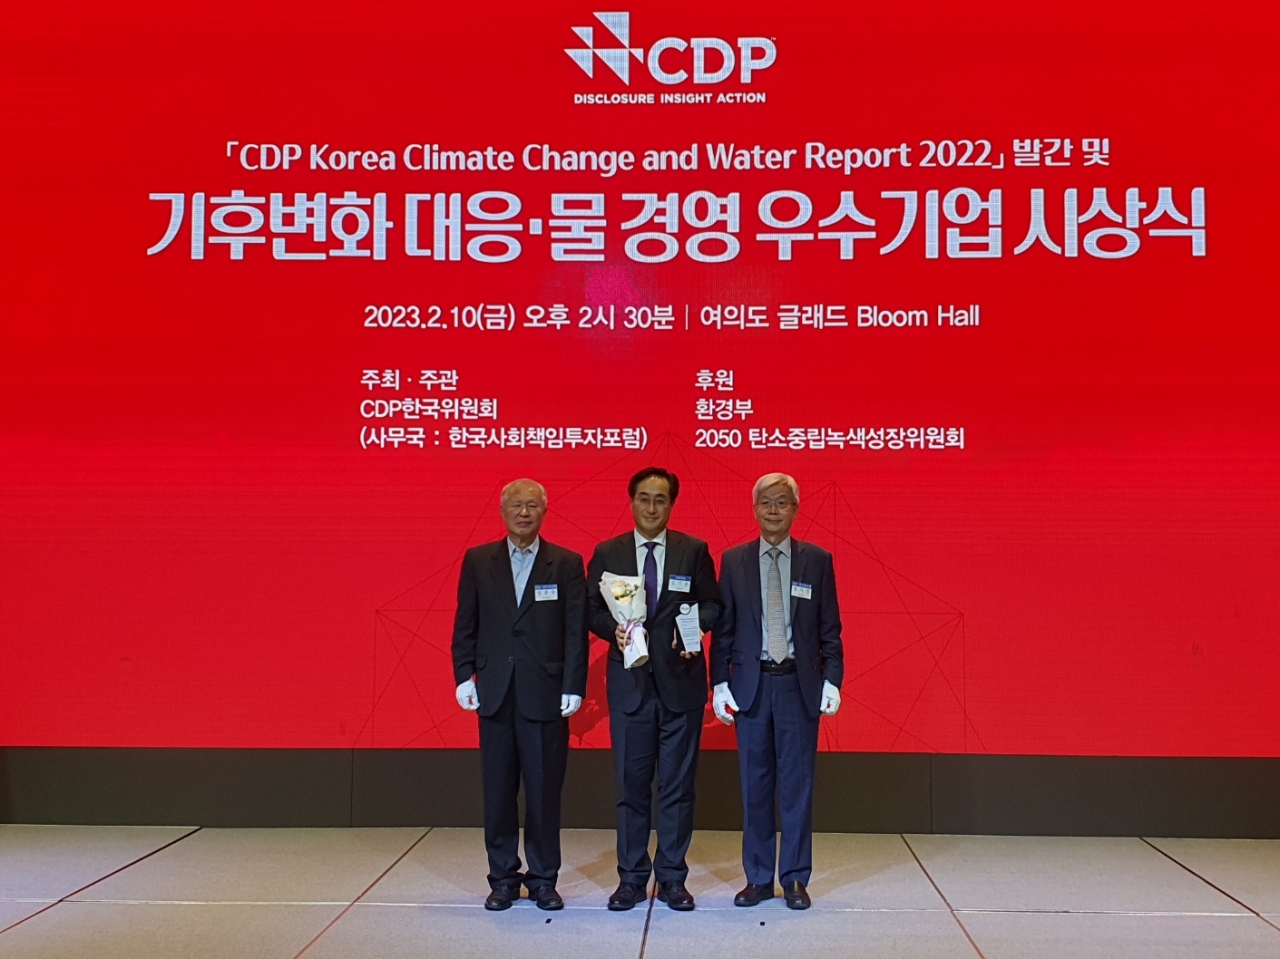 고려아연 김기준 지속가능경영본부장(사진 중앙)이 ’2022 탄소정보 공개프로젝트(CDP)코리아 어워드에서 기후변화 분야 탄소경영 특별상을 수상하고 있다.